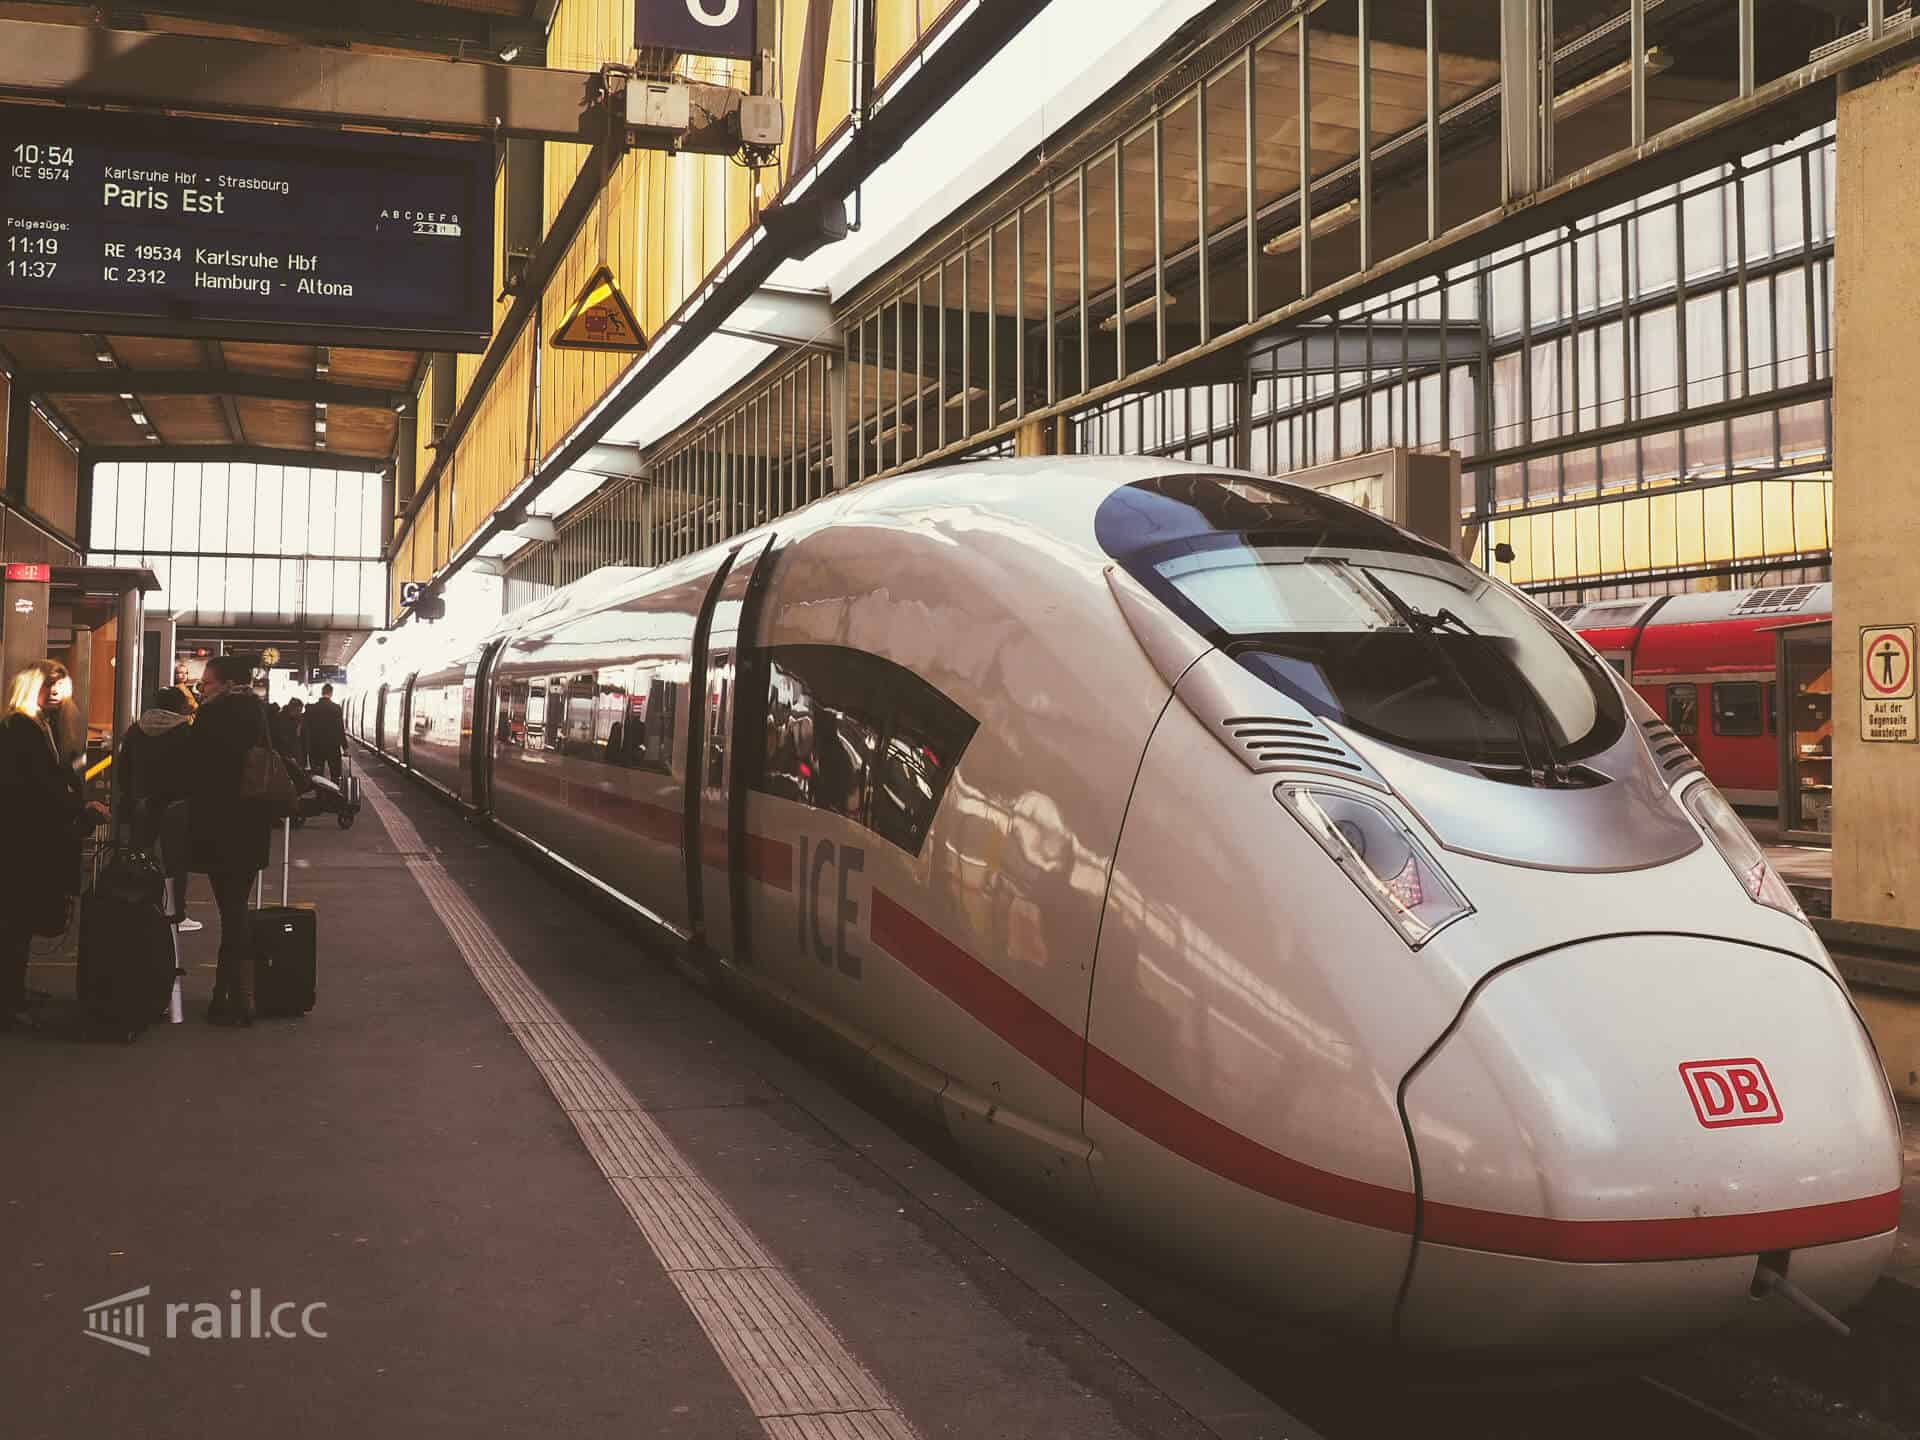 Von Stuttgart nach Paris mit dem ICE zum Sparpreis rail.cc